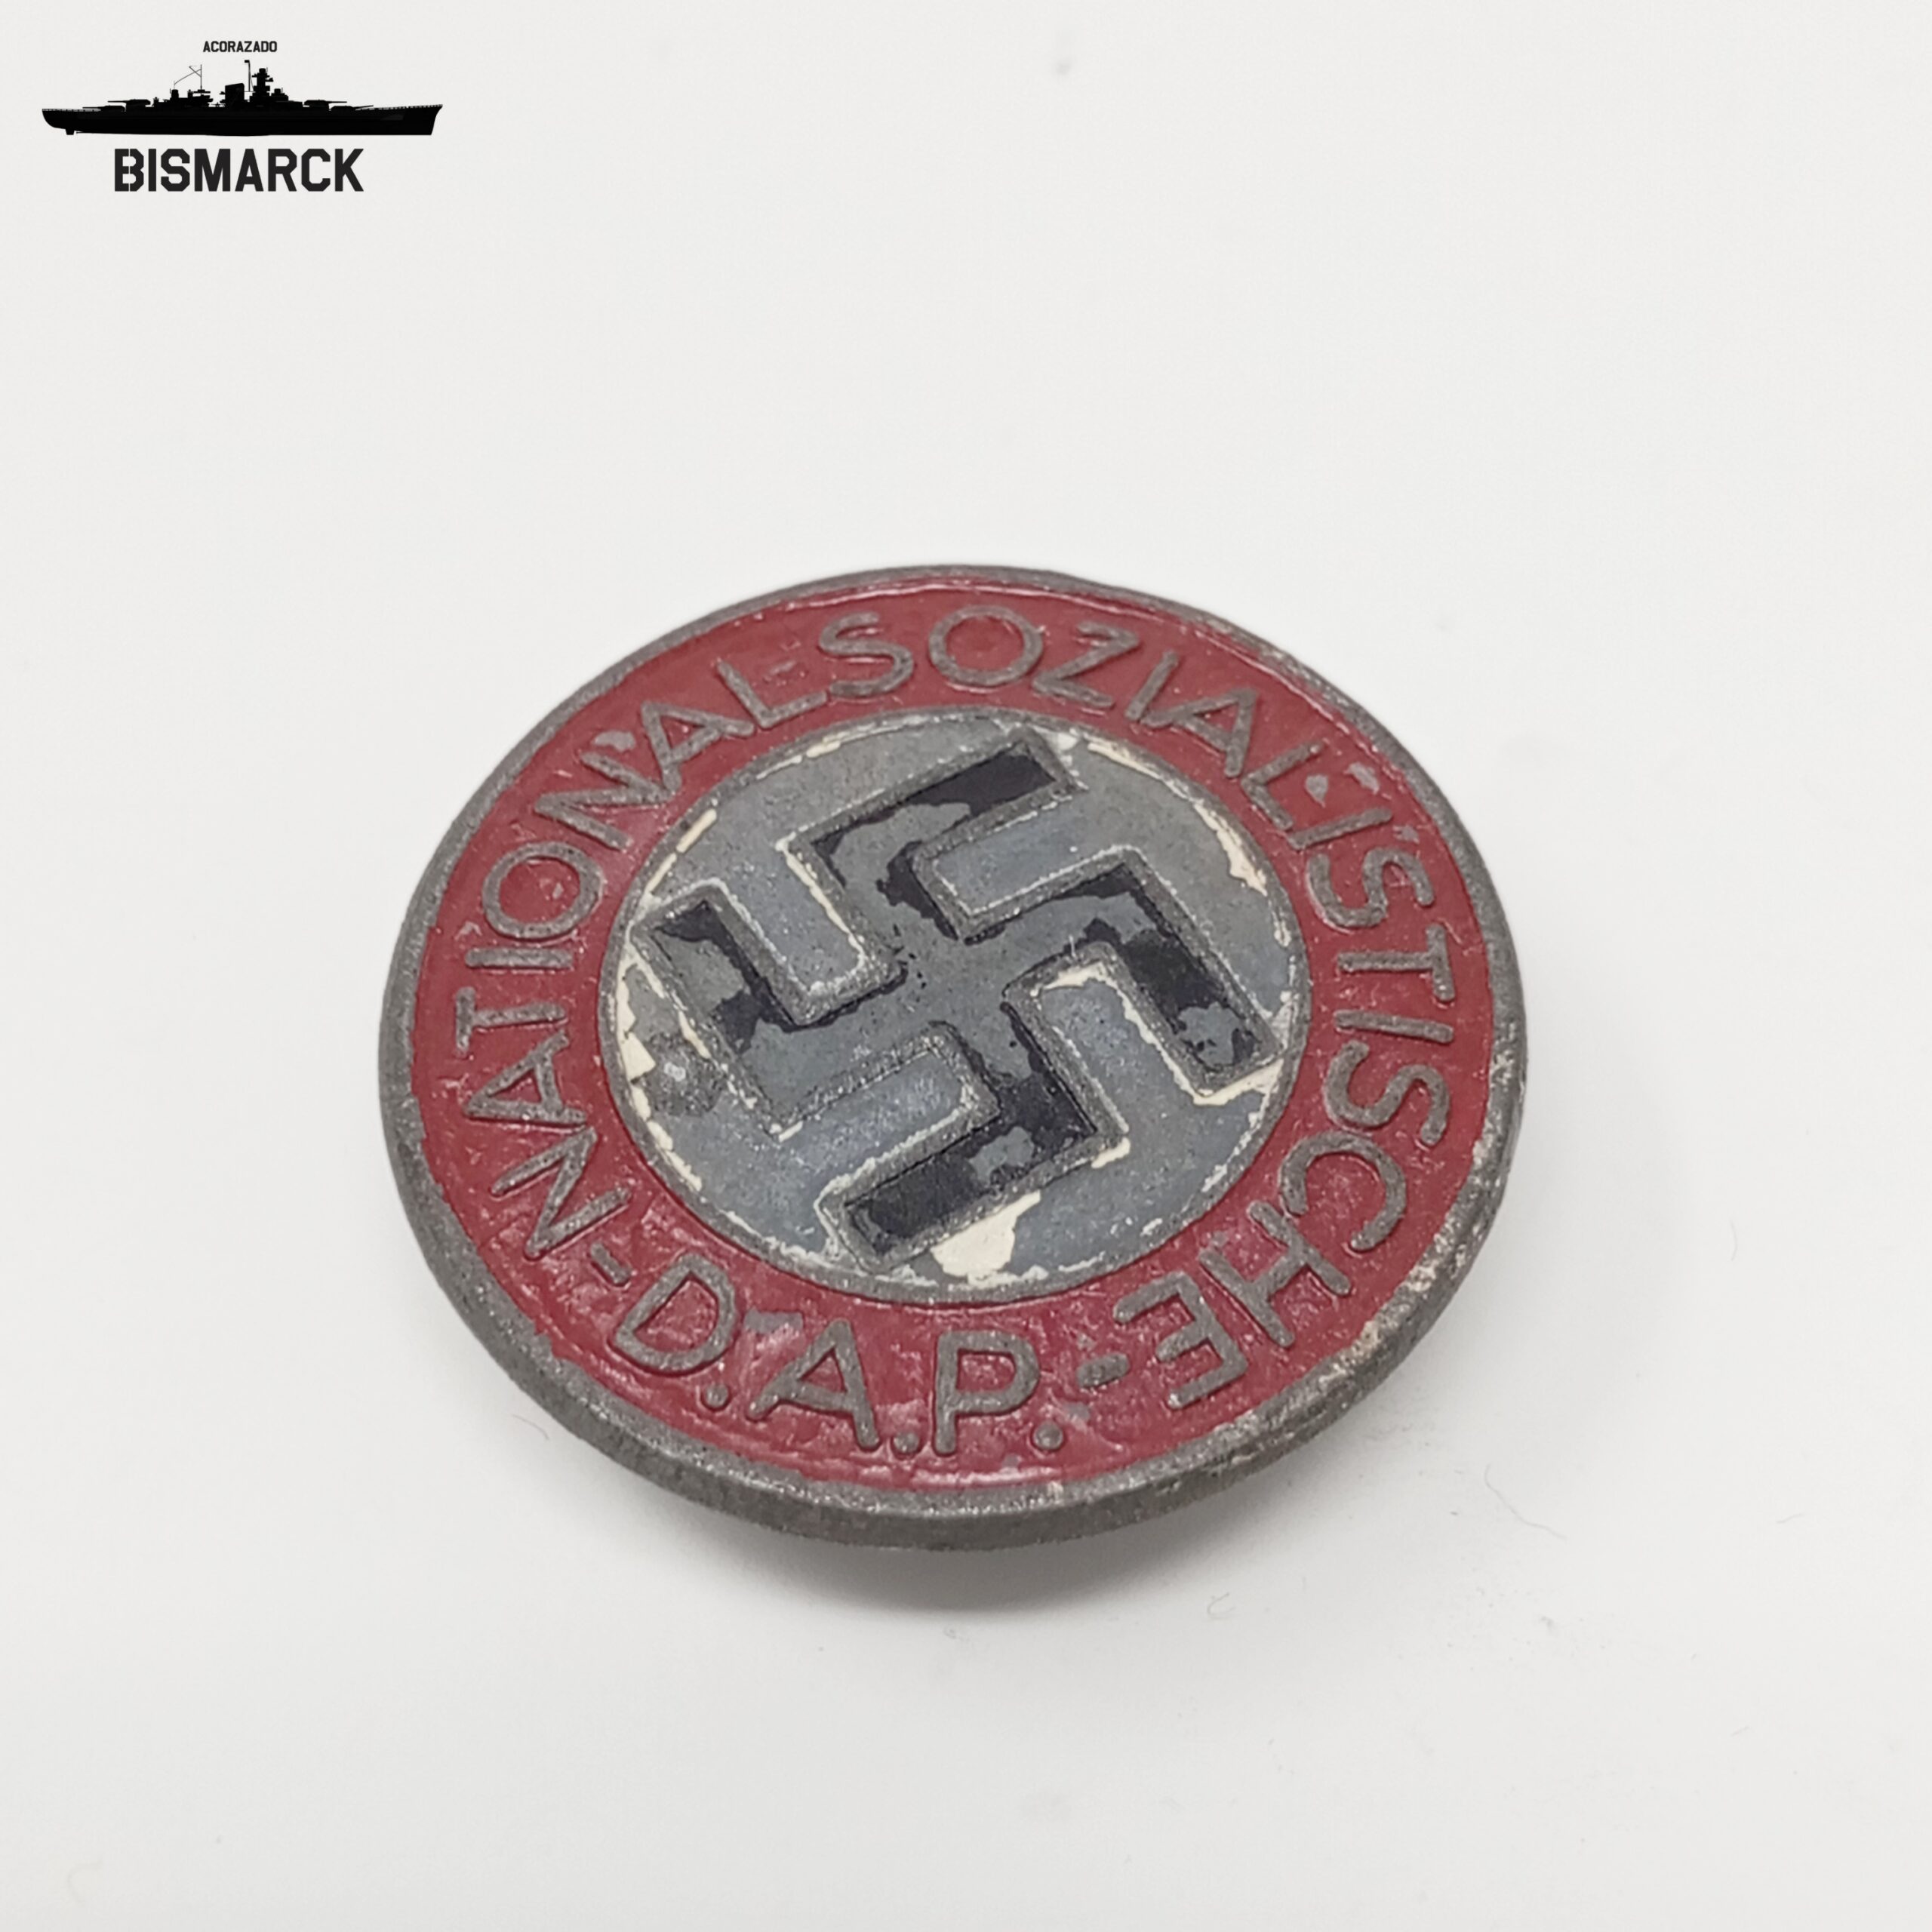 DISTINTIVO NSDAP BOTÓN